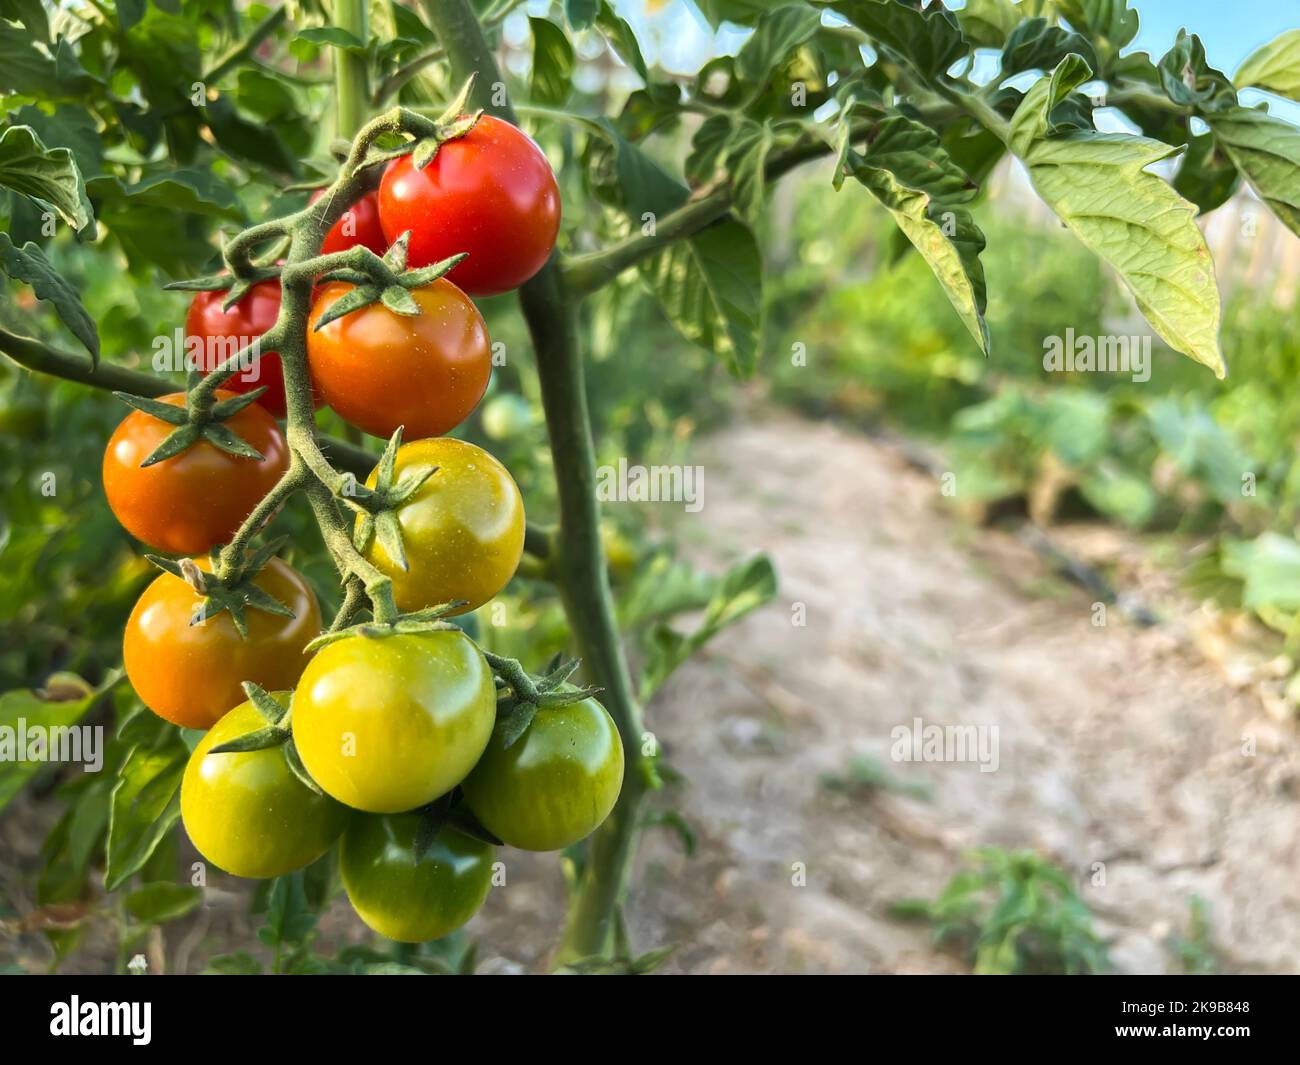 Kirschtomaten, frische rote reife und unreife grüne Kirschtomaten, die an der Rebe der Tomatenpflanze hängen. Schöner sonniger Tag in Bio-Bauernhof, Gartenarbeit. Stockfoto